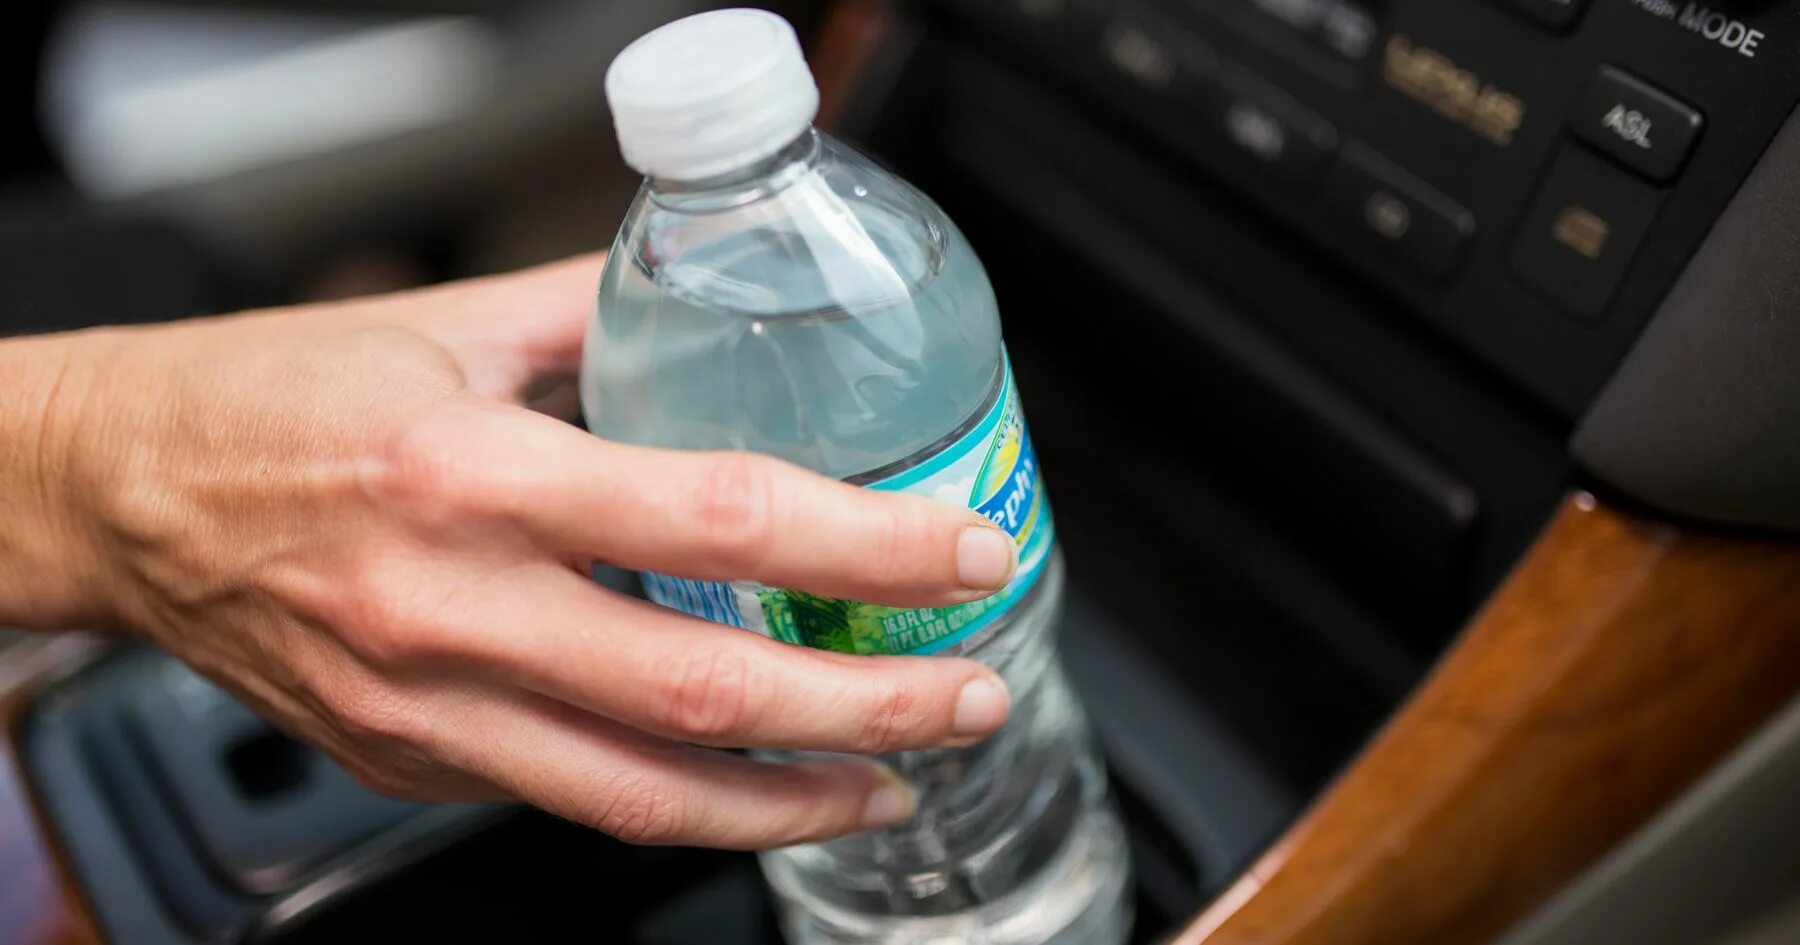 Бутылка для воды. Бутылка воды в руке. Бутылка воды в машине. Бутылка воды в салоне авто. Почему нельзя оставлять бутылки на столе